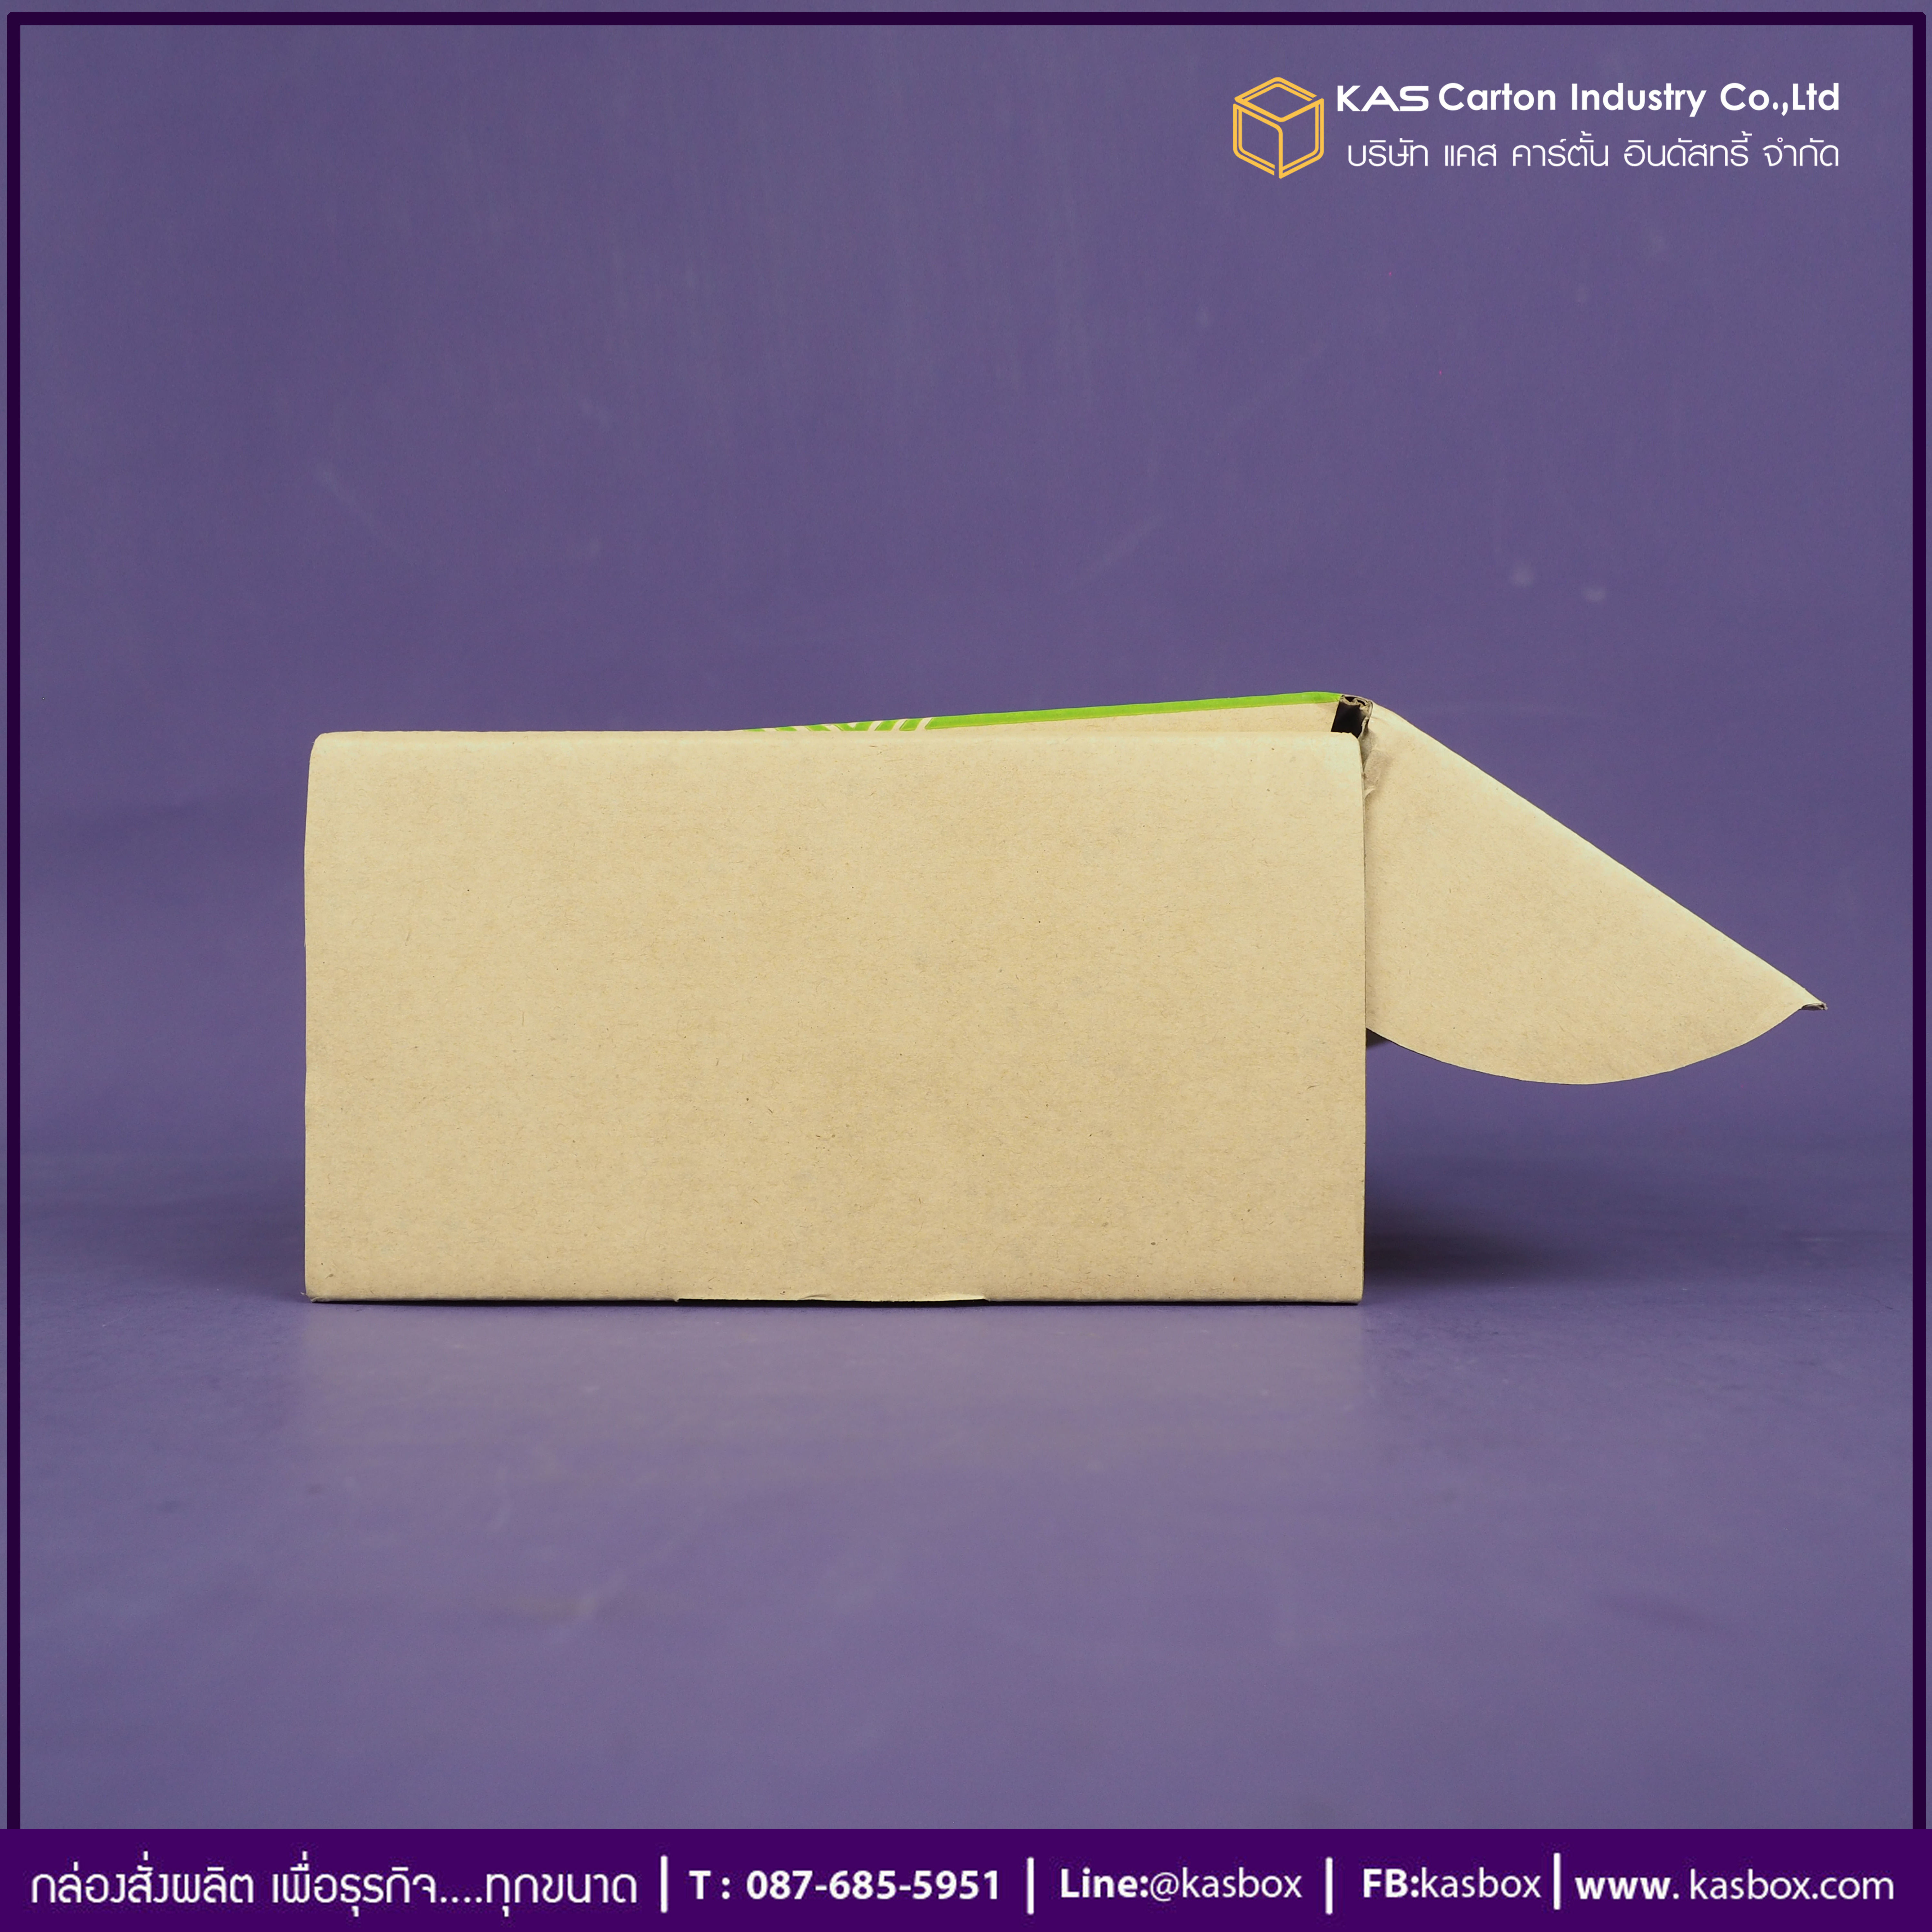 กล่องลูกฟูก สำเร็จรูป และ สั่งผลิต ตามความต้องการลูกค้า กล่องลูกฟูก SME กล่องกระดาษลูกฟูก ใส่อาหารเวียดนาม VTแหนมเนือง